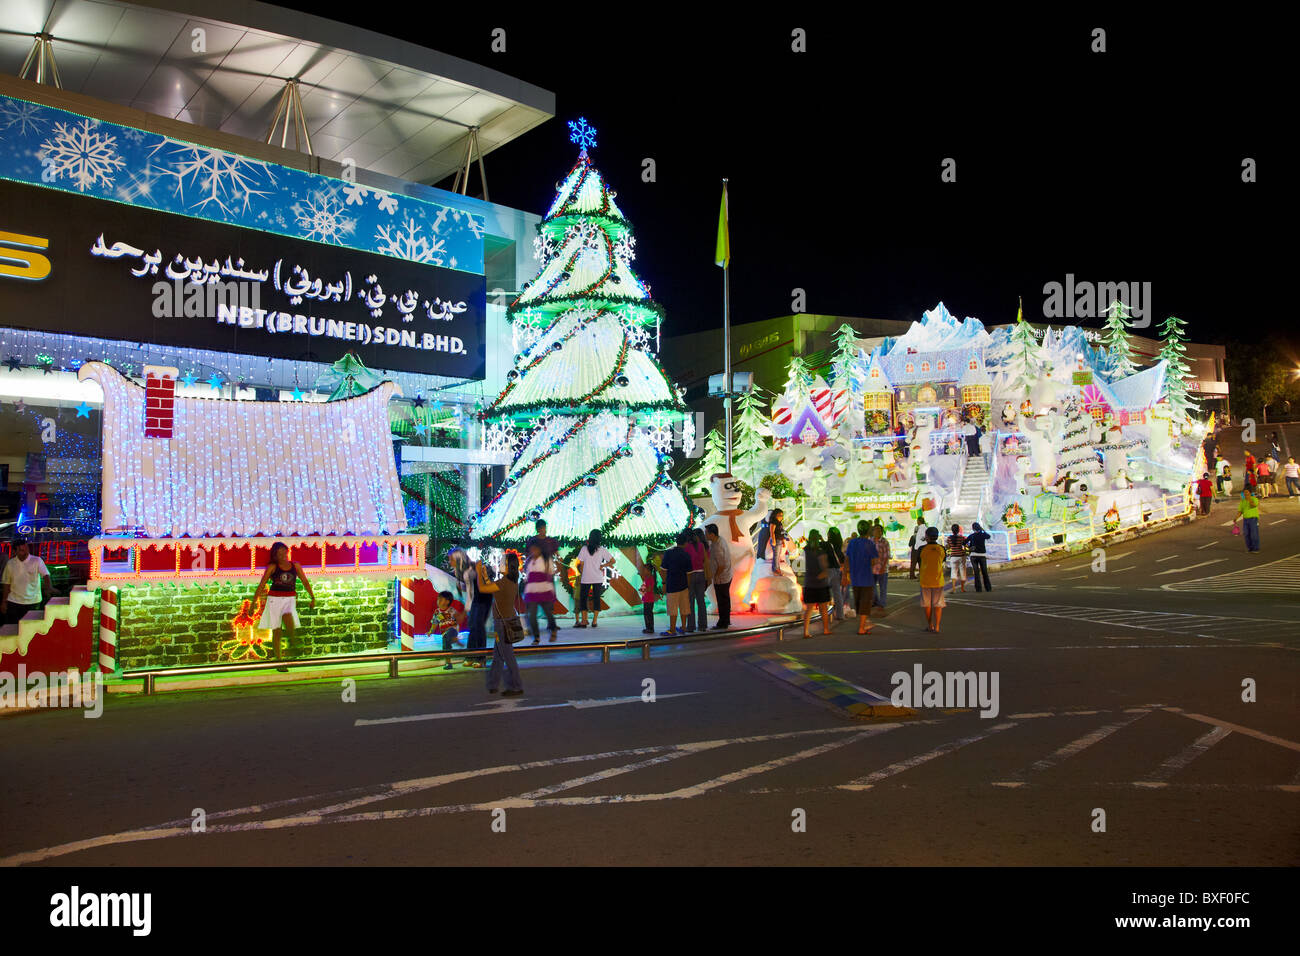 Adornos de Navidad en el concesionario de Lexus, Bandar Seri Begawan, Brunei Darussalam, Asia Foto de stock